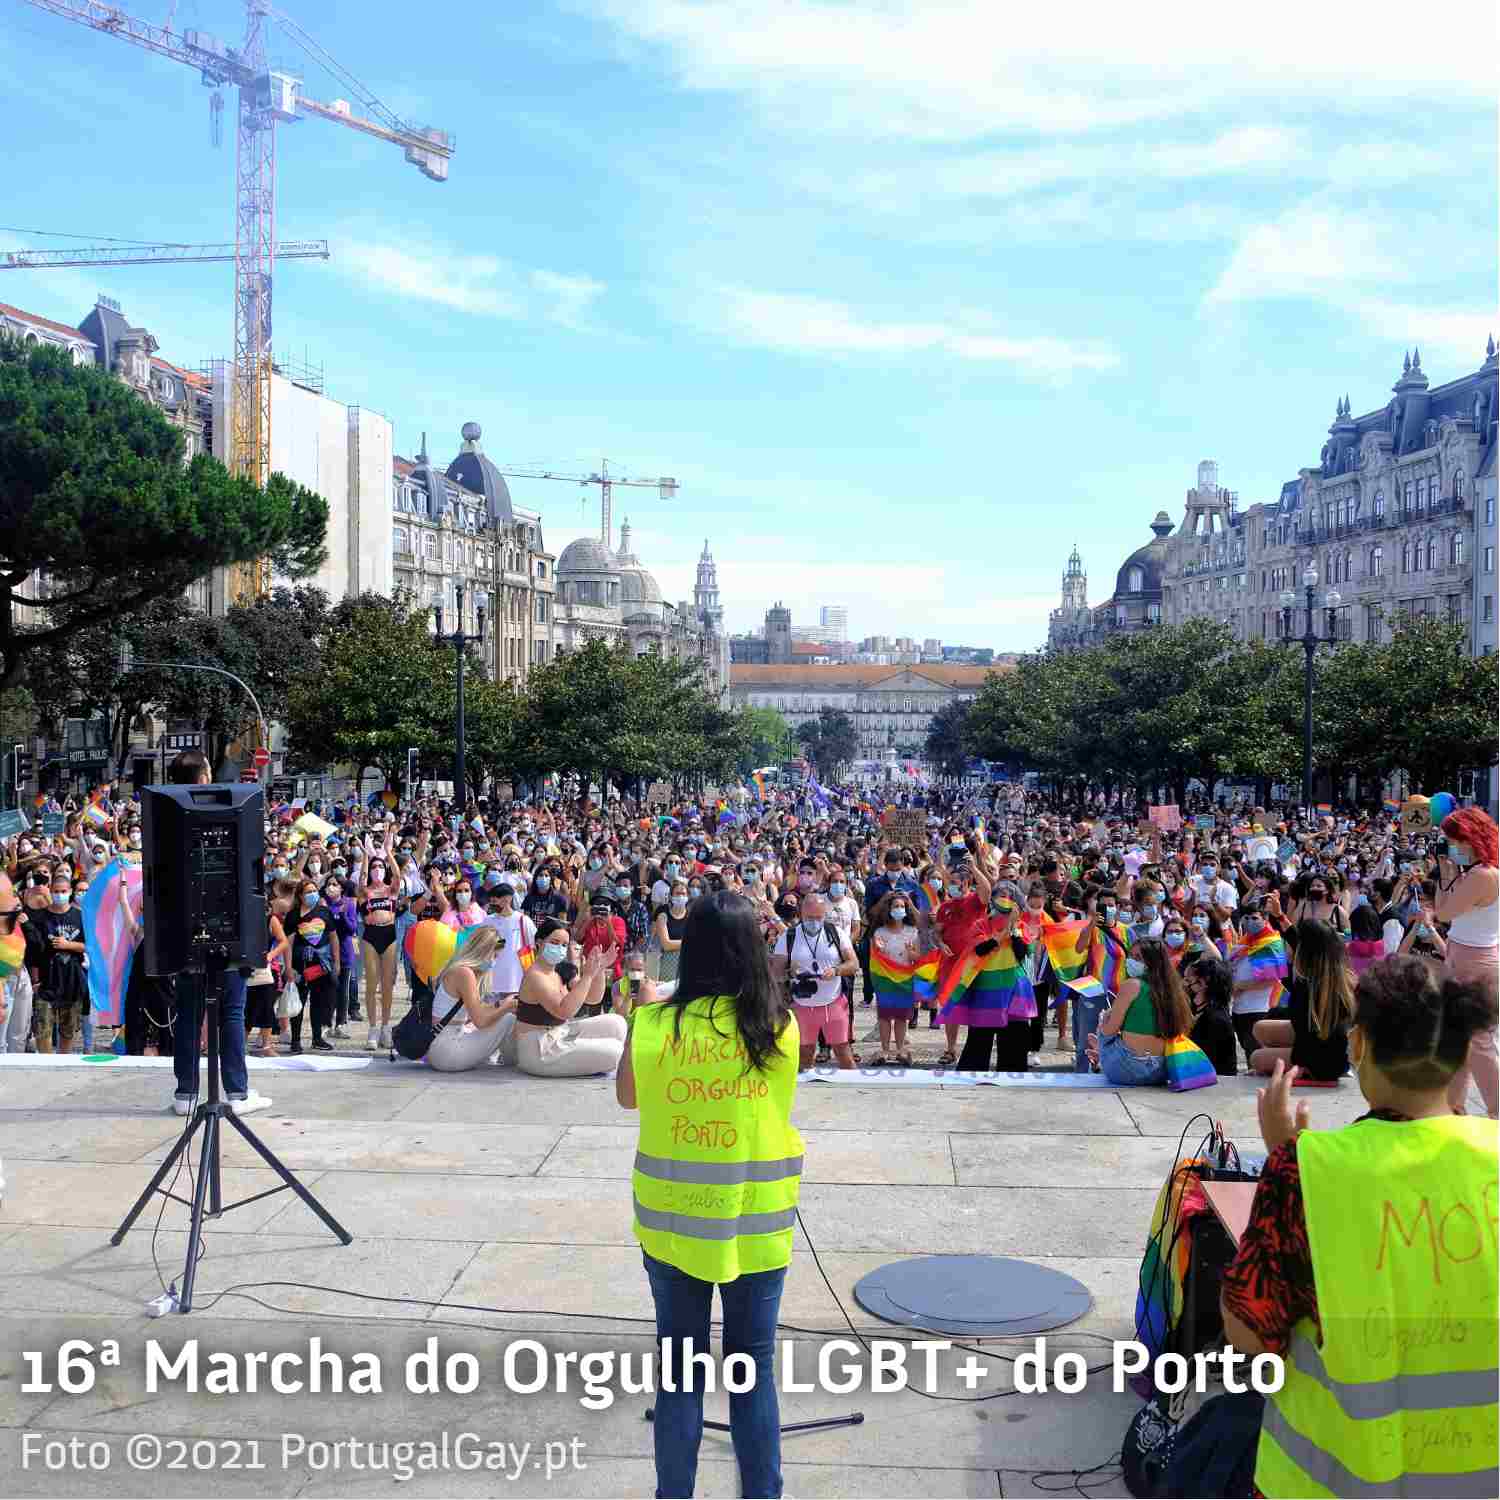 PORTUGAL: 16ª Marcha do Orgulho LGBT no Porto com mais de 2000 participantes